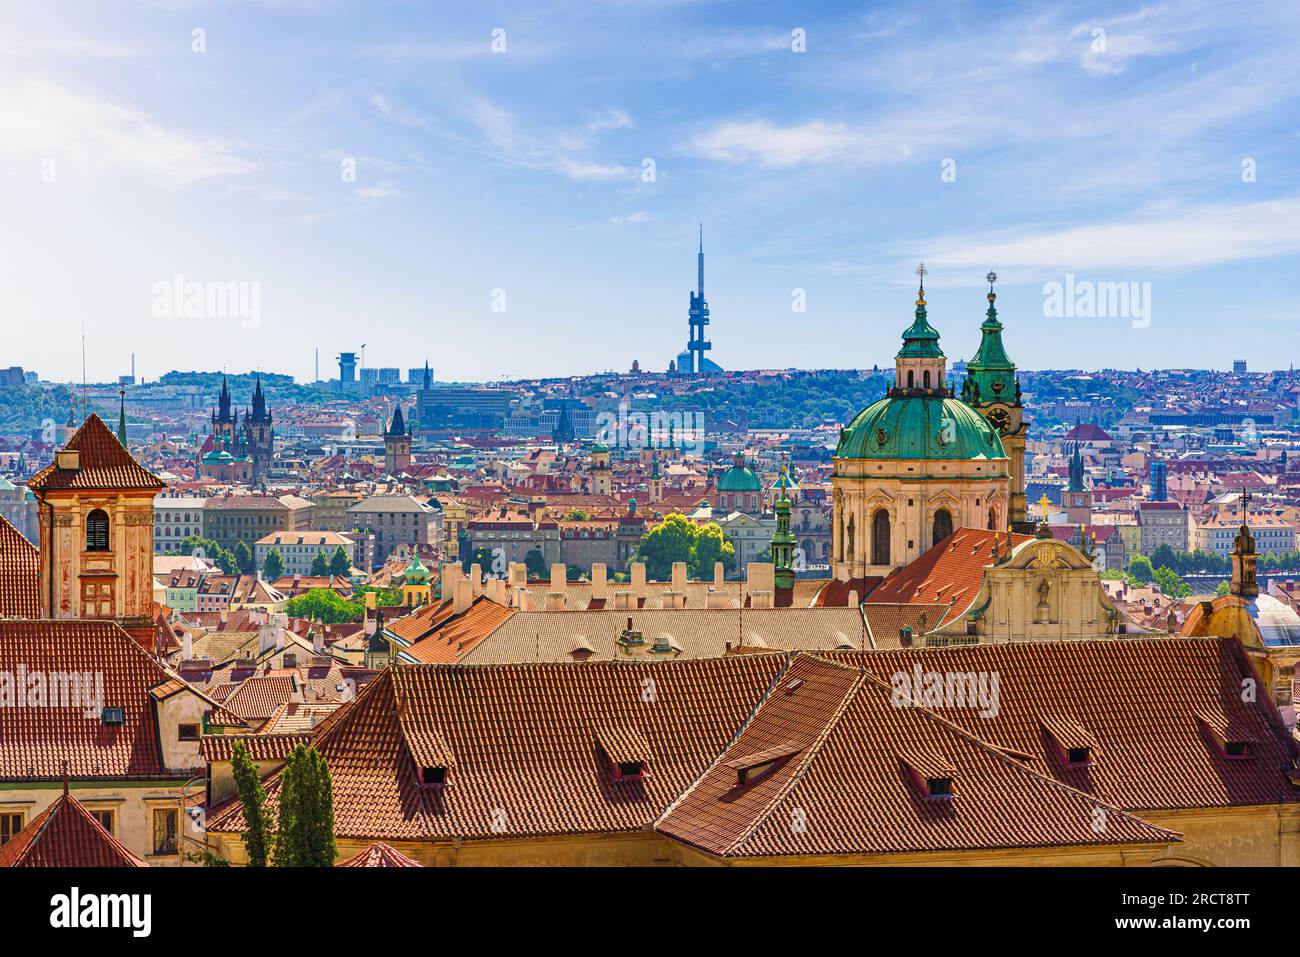 Vue panoramique sur le paysage urbain de Prague avec des dizaines de tours mêlant patrimoine et modernité Banque D'Images